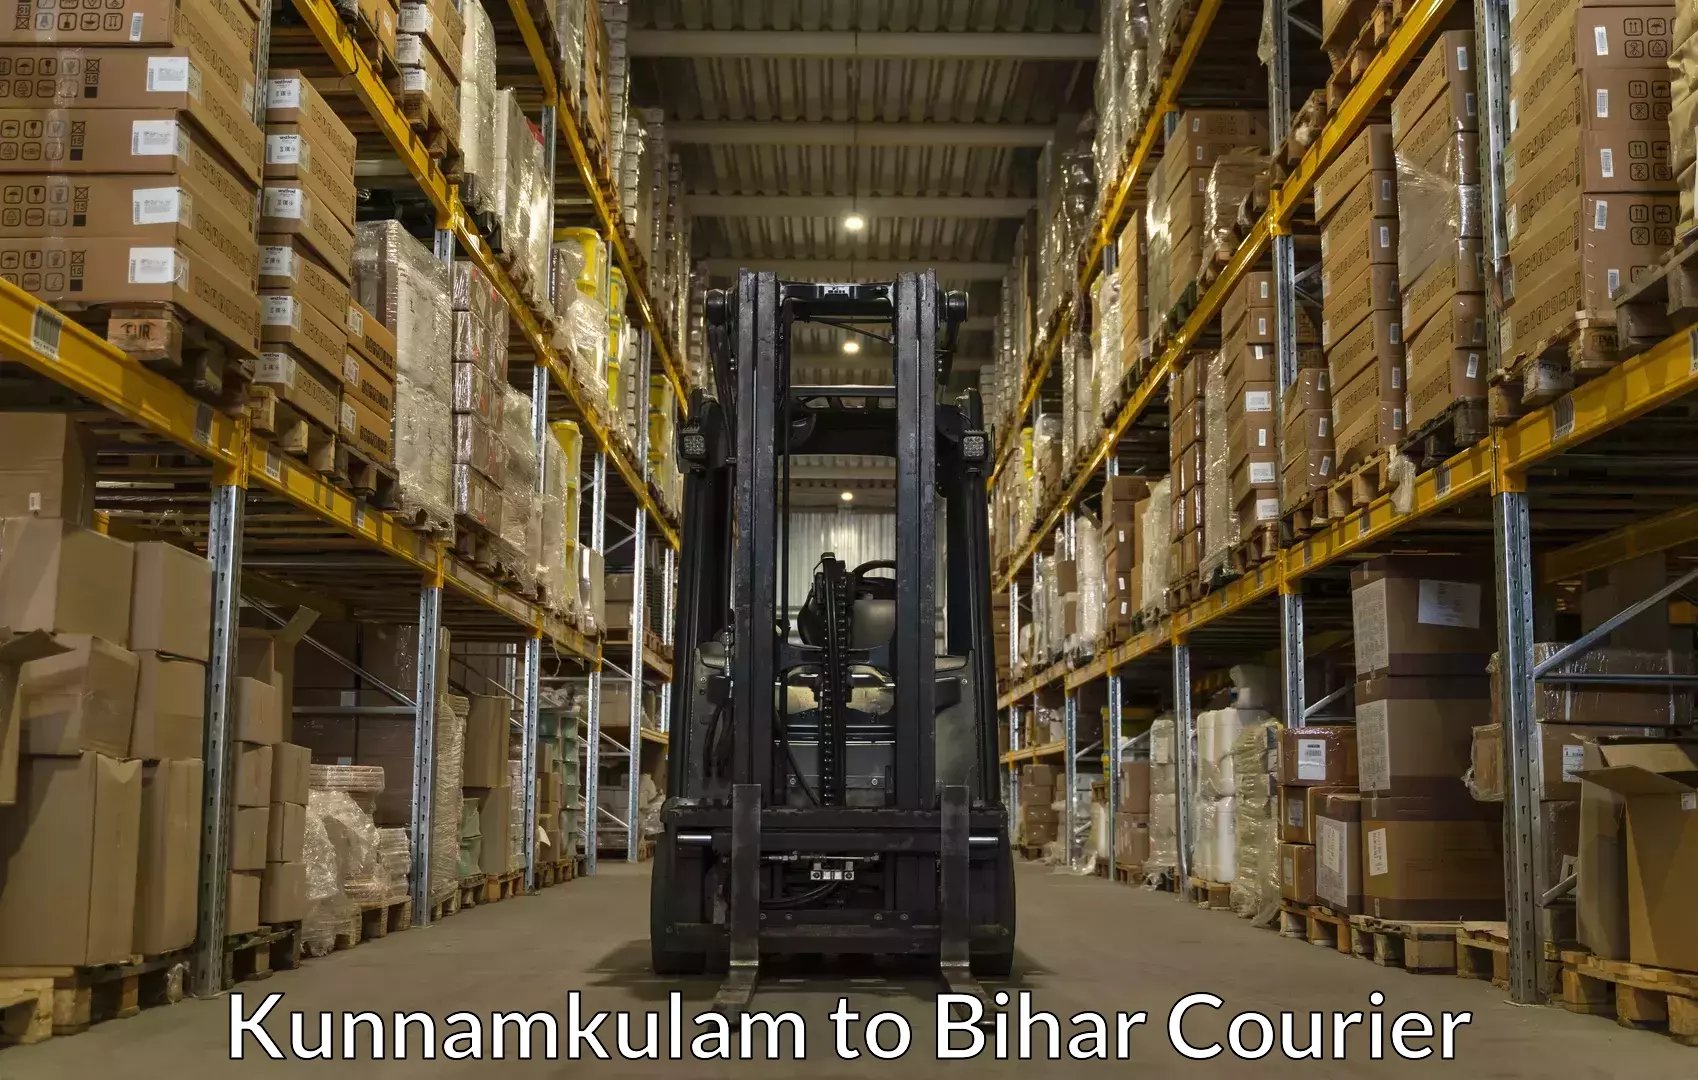 Baggage transport professionals Kunnamkulam to Bihar